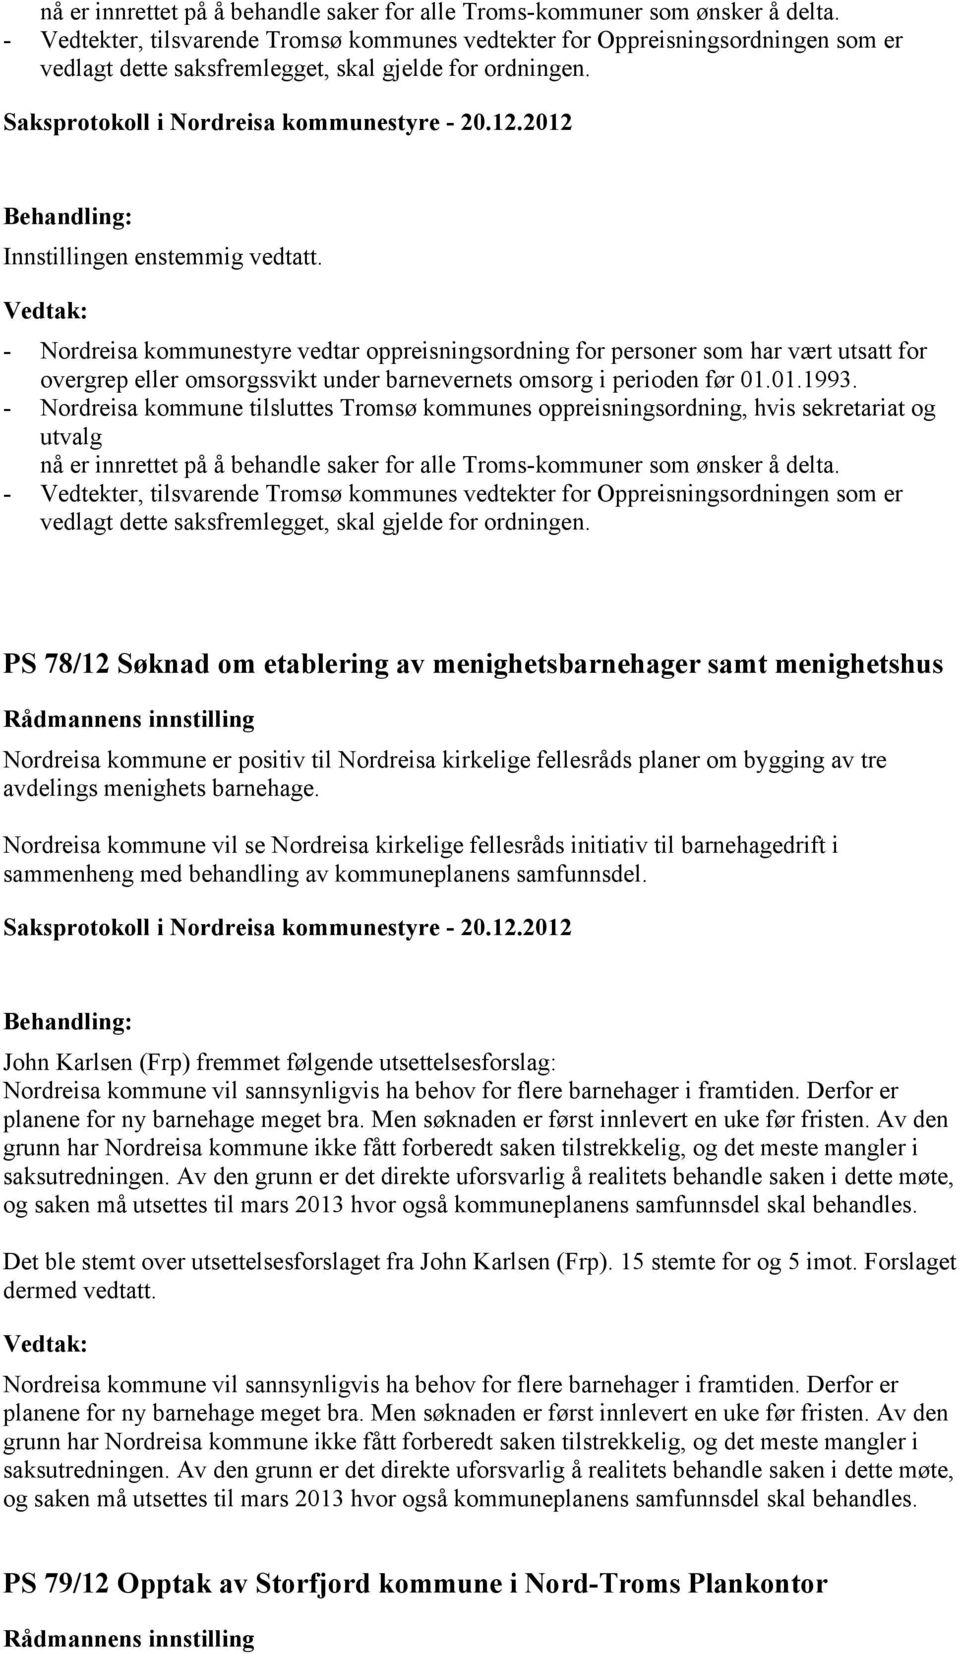 - Nordreisa kommunestyre vedtar oppreisningsordning for personer som har vært utsatt for overgrep eller omsorgssvikt under barnevernets omsorg i perioden før 01.01.1993.